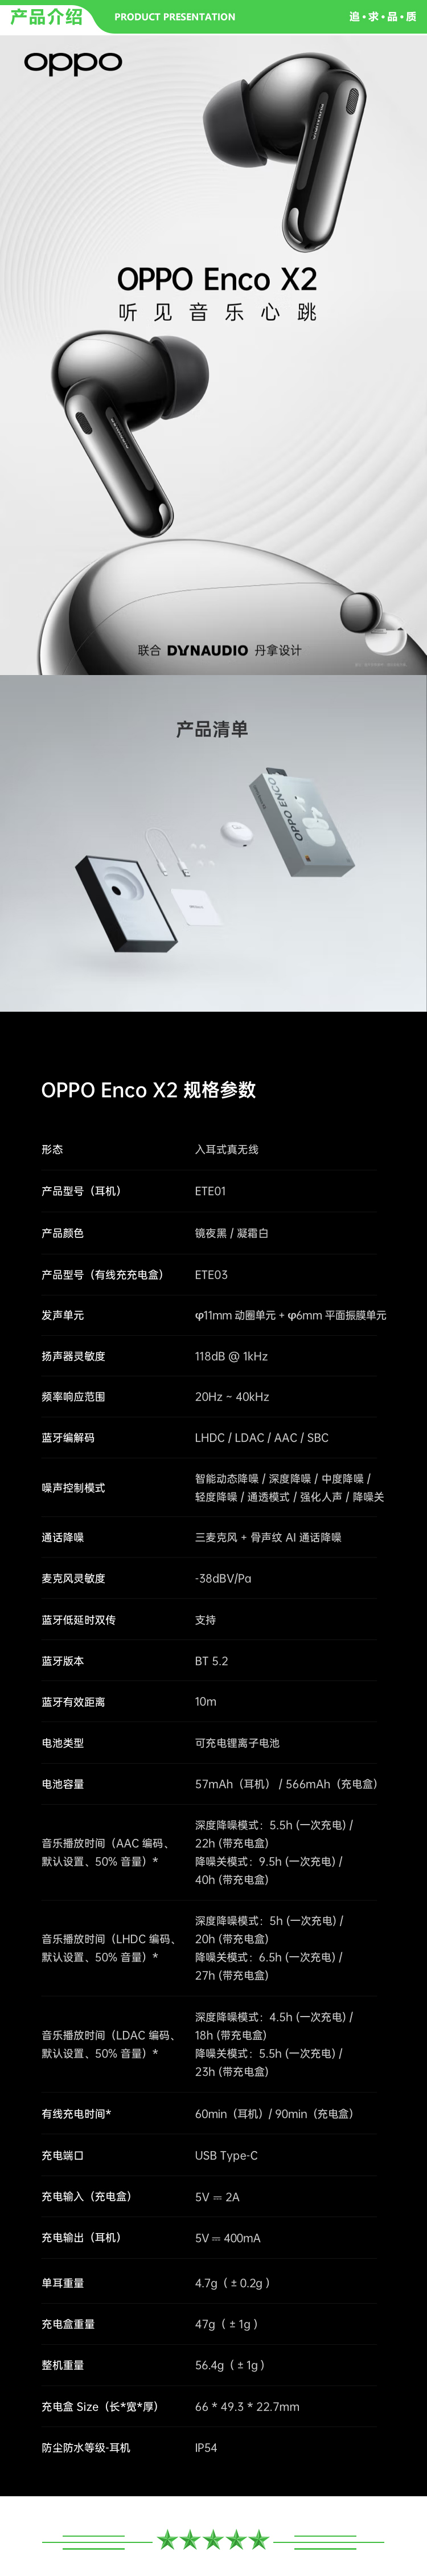 OPPO Enco X2 ETE01 镜夜黑 真无线入耳式蓝牙耳机 降噪游戏音乐运动耳机 久石让调音 通用苹果华为小米手机 有线充版 .jpg